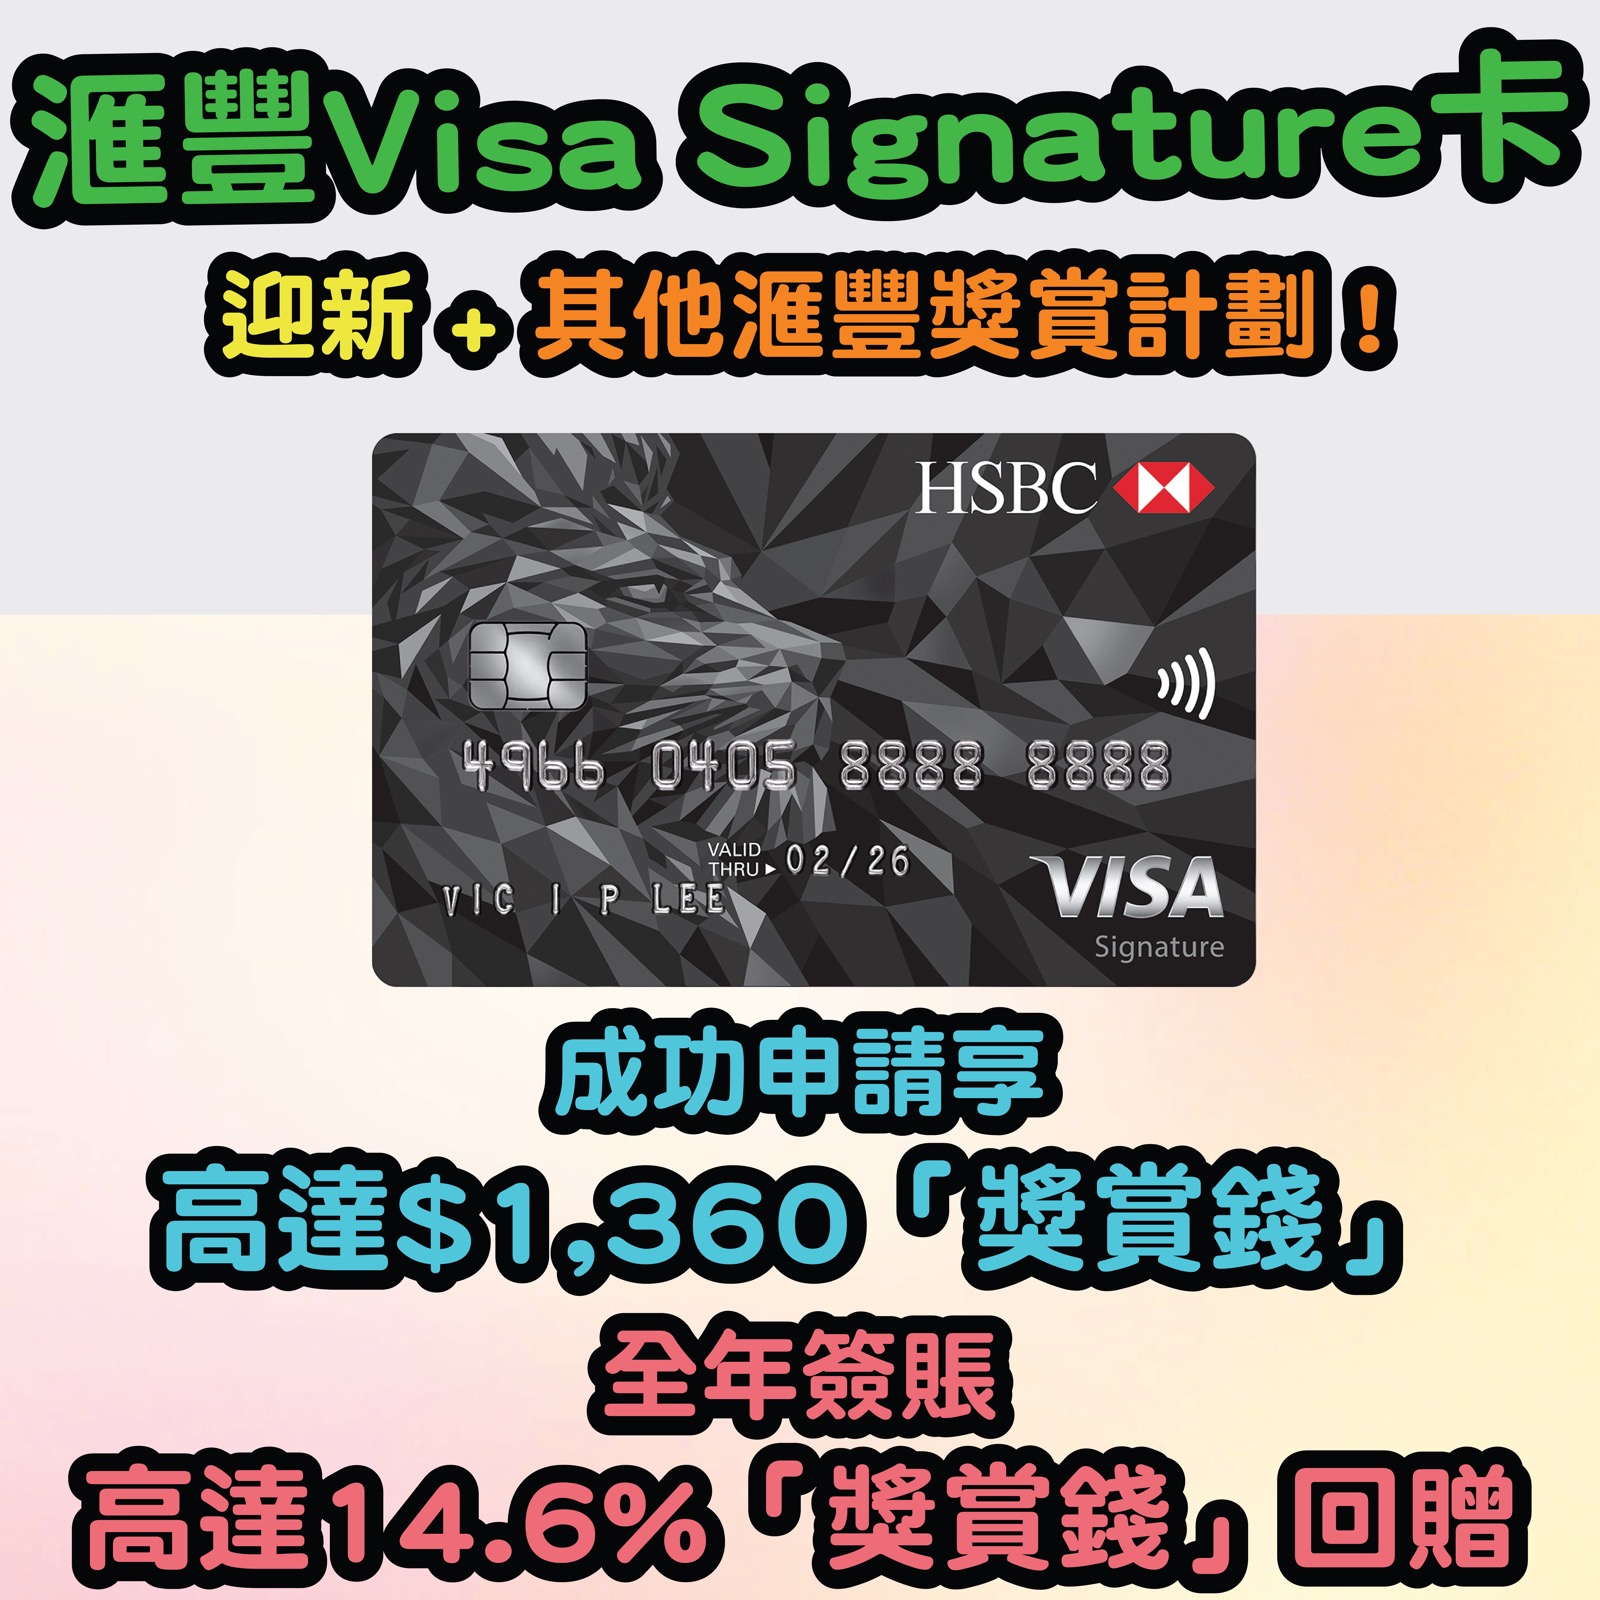 【滙豐Visa Signature卡】迎新 + 簽賬及套現享高達$1,360「獎賞錢」，全年簽賬高達3.6%「獎賞錢」回贈！